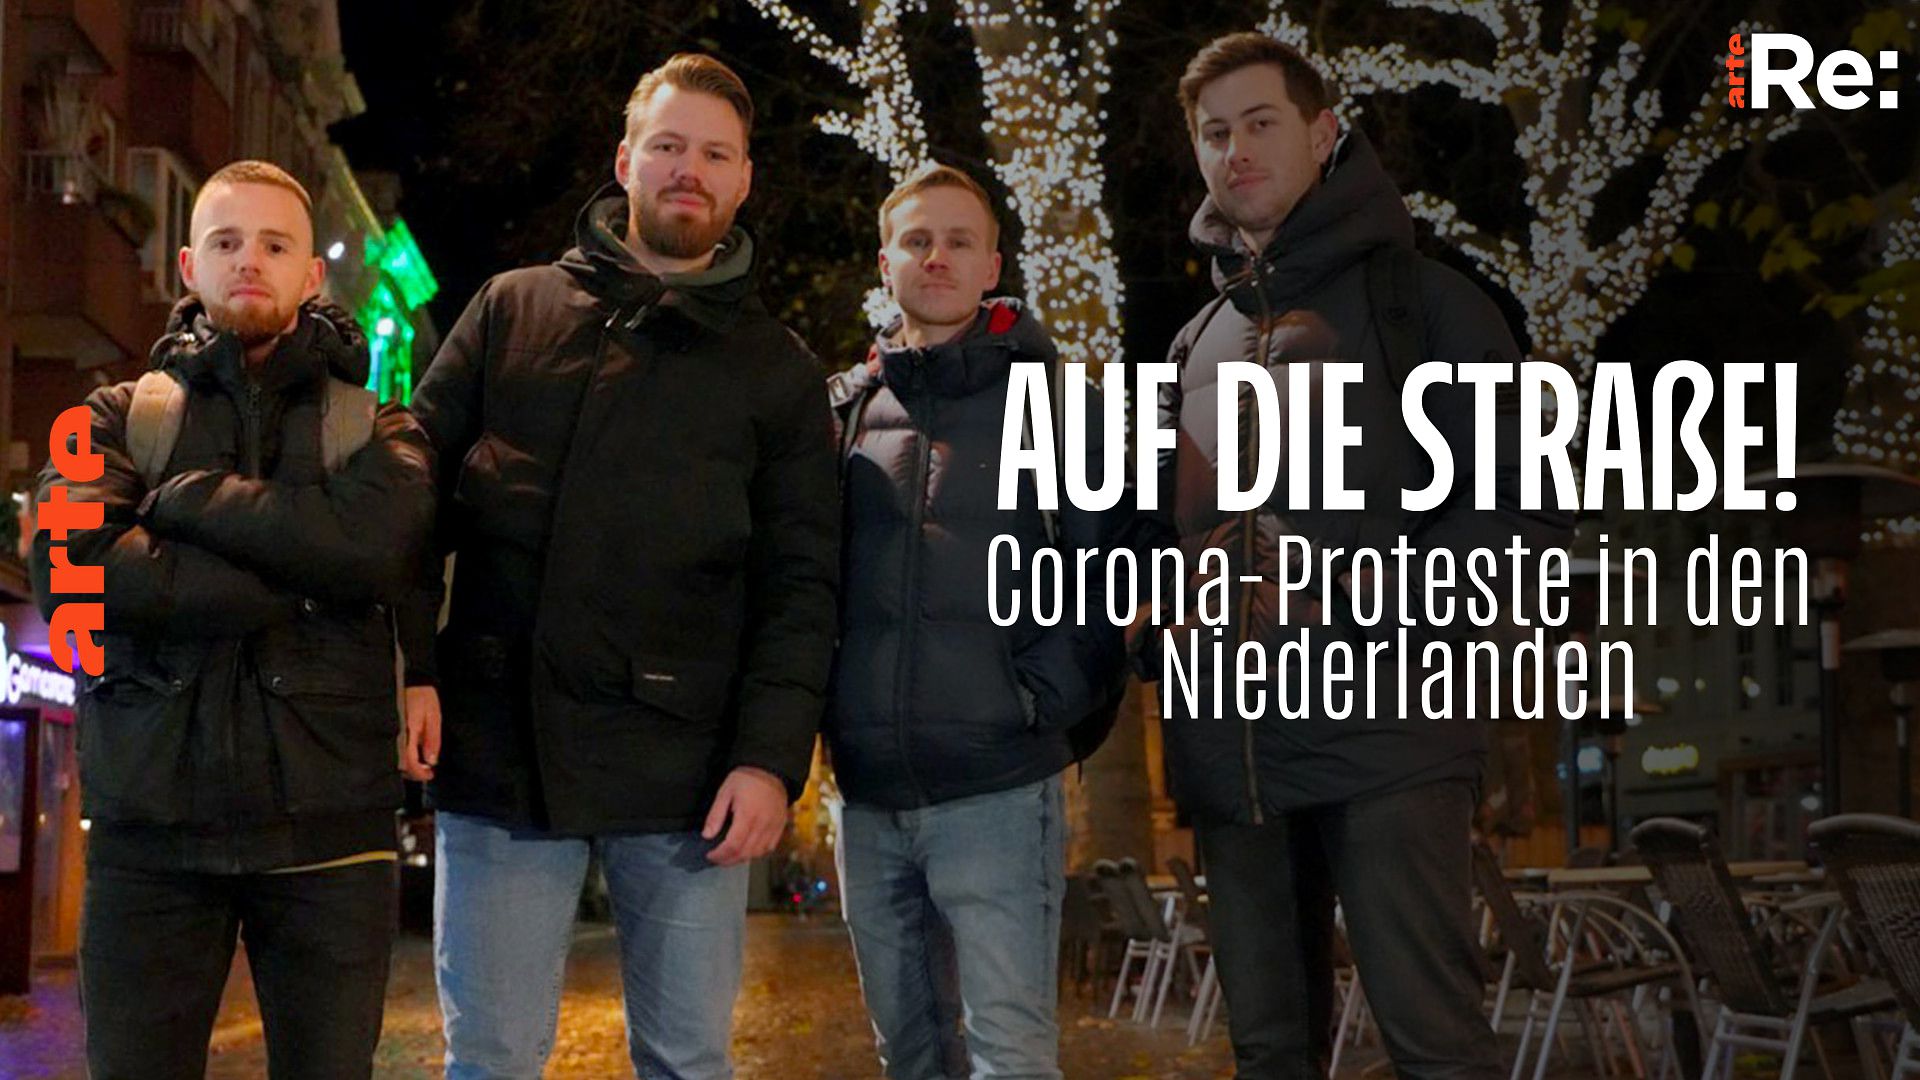 Recherche und Konzeption:
Re: Calvinisten und Corona - Proteste in den Niederlanden - Die ganze Doku | ARTE